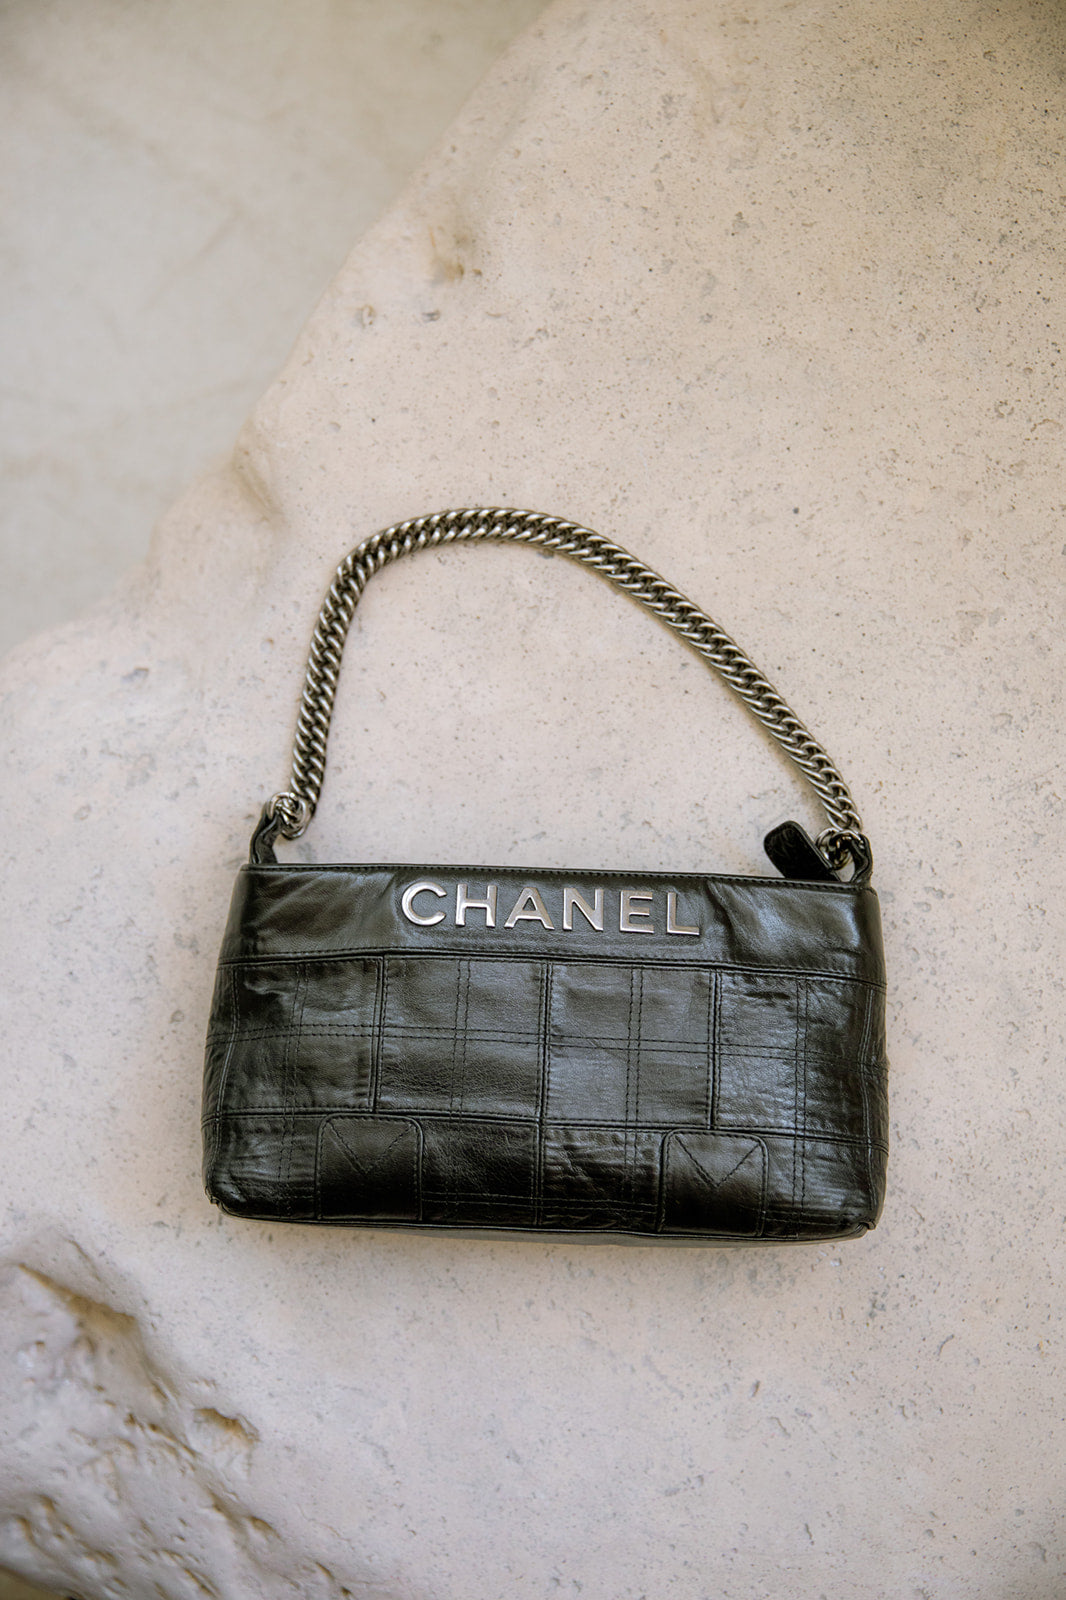 Vintage Chanel chocolate bar letter bag